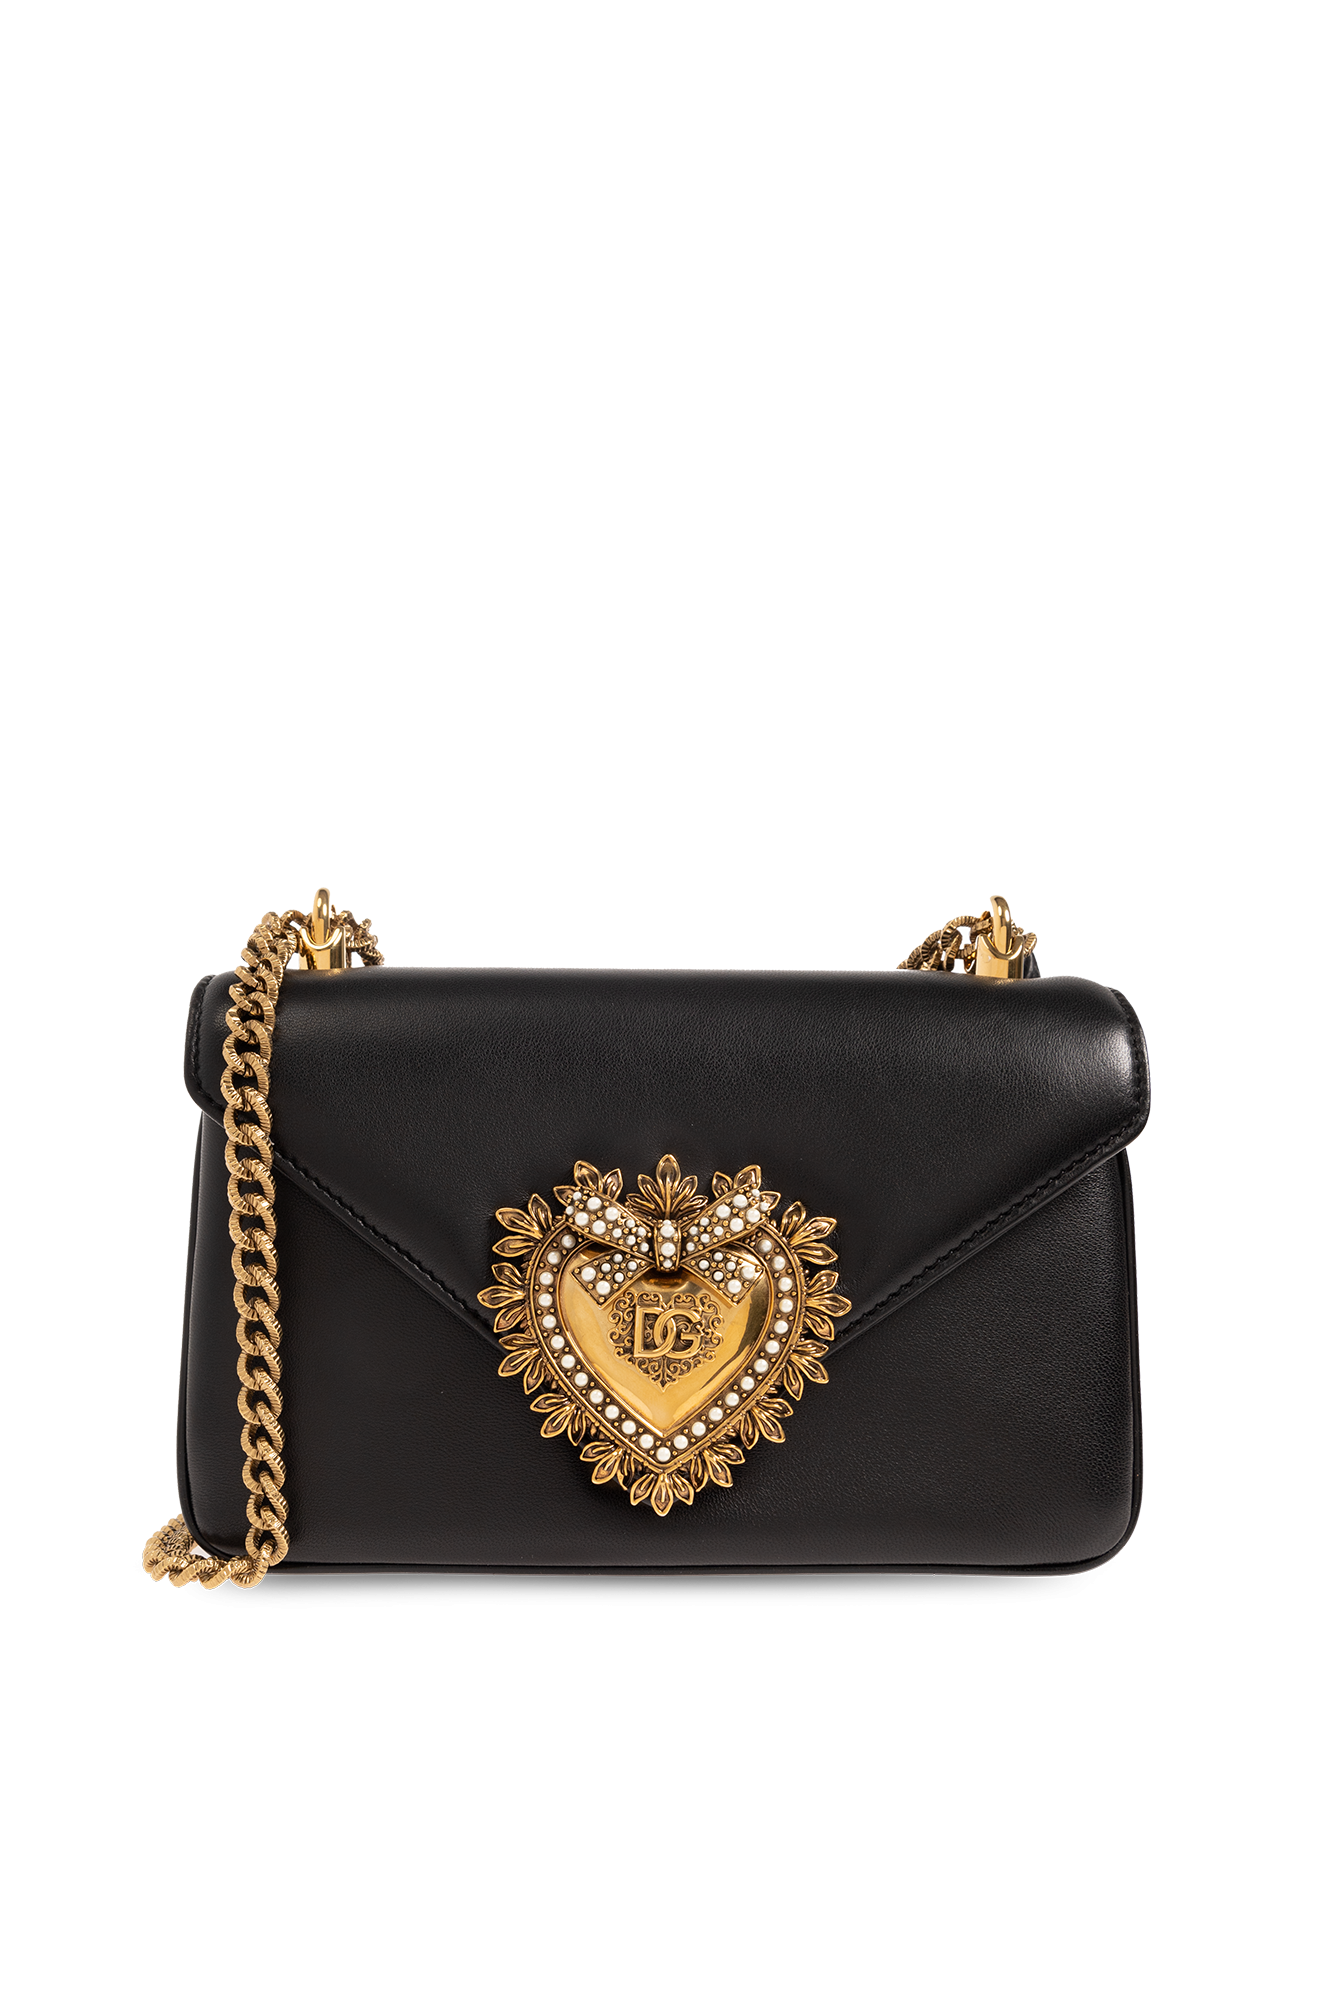 GenesinlifeShops Switzerland - dolce gabbana stripe embellished slides item  - Black 'Devotion' shoulder bag Dolce & Gabbana